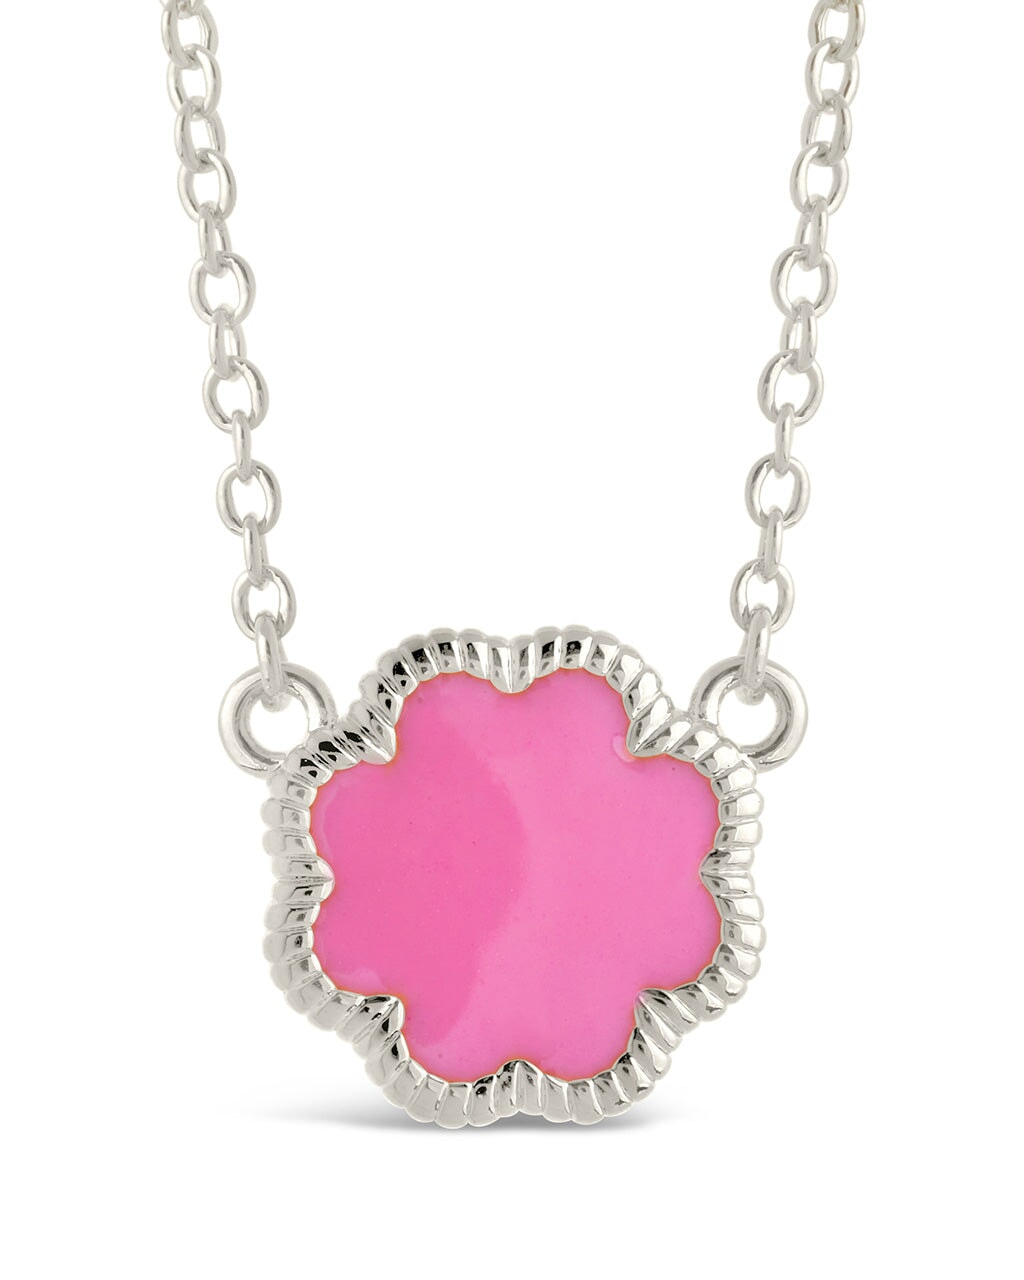 Rose Petal Pendant Necklace Necklace Sterling Forever Silver Pink Enamel 